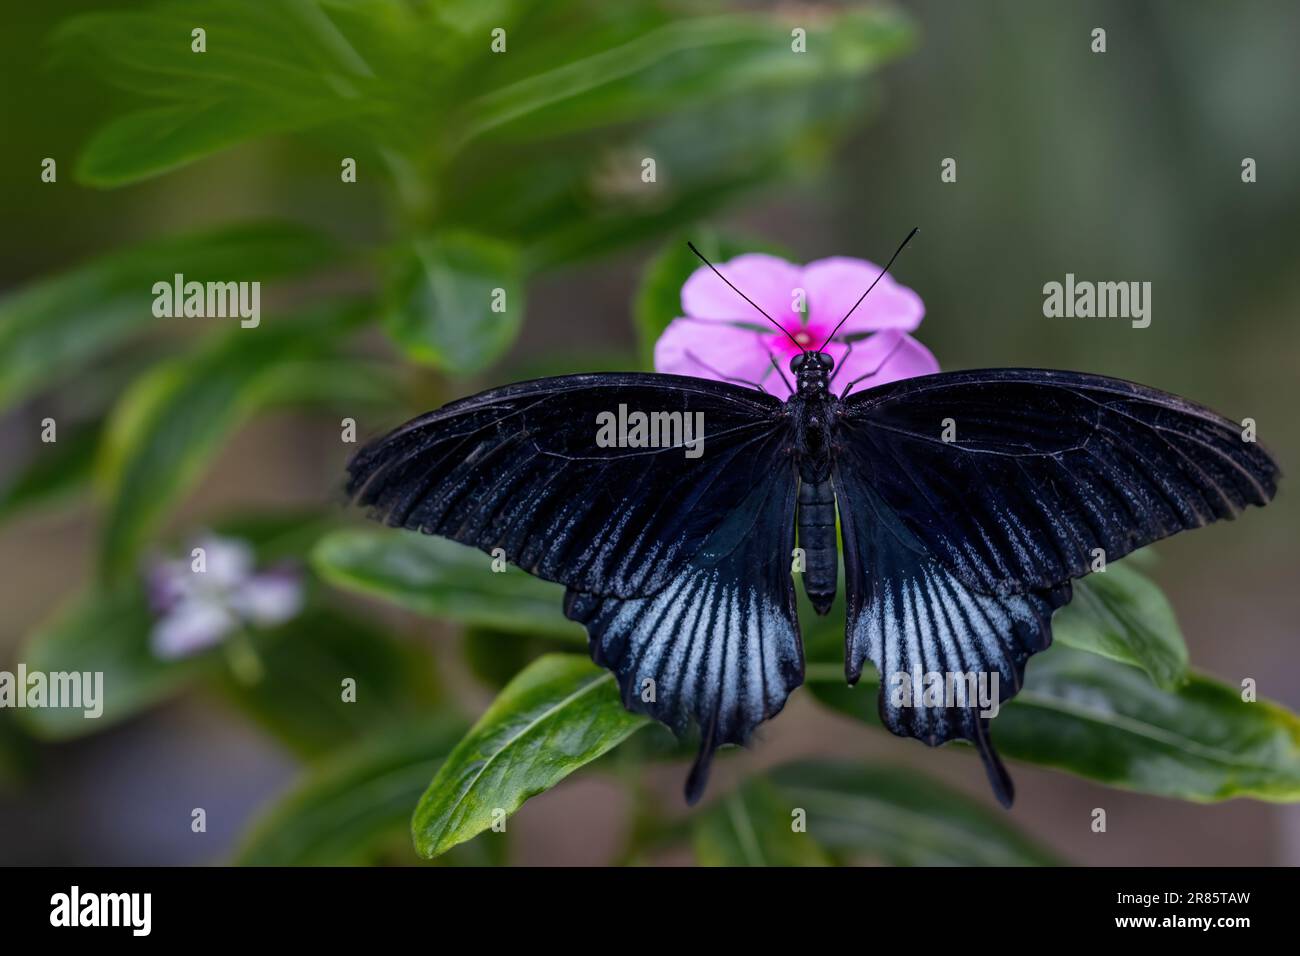 Gros plan d'un papillon à ailes noires reposant sur une fleur rose. Horizontalement. Banque D'Images